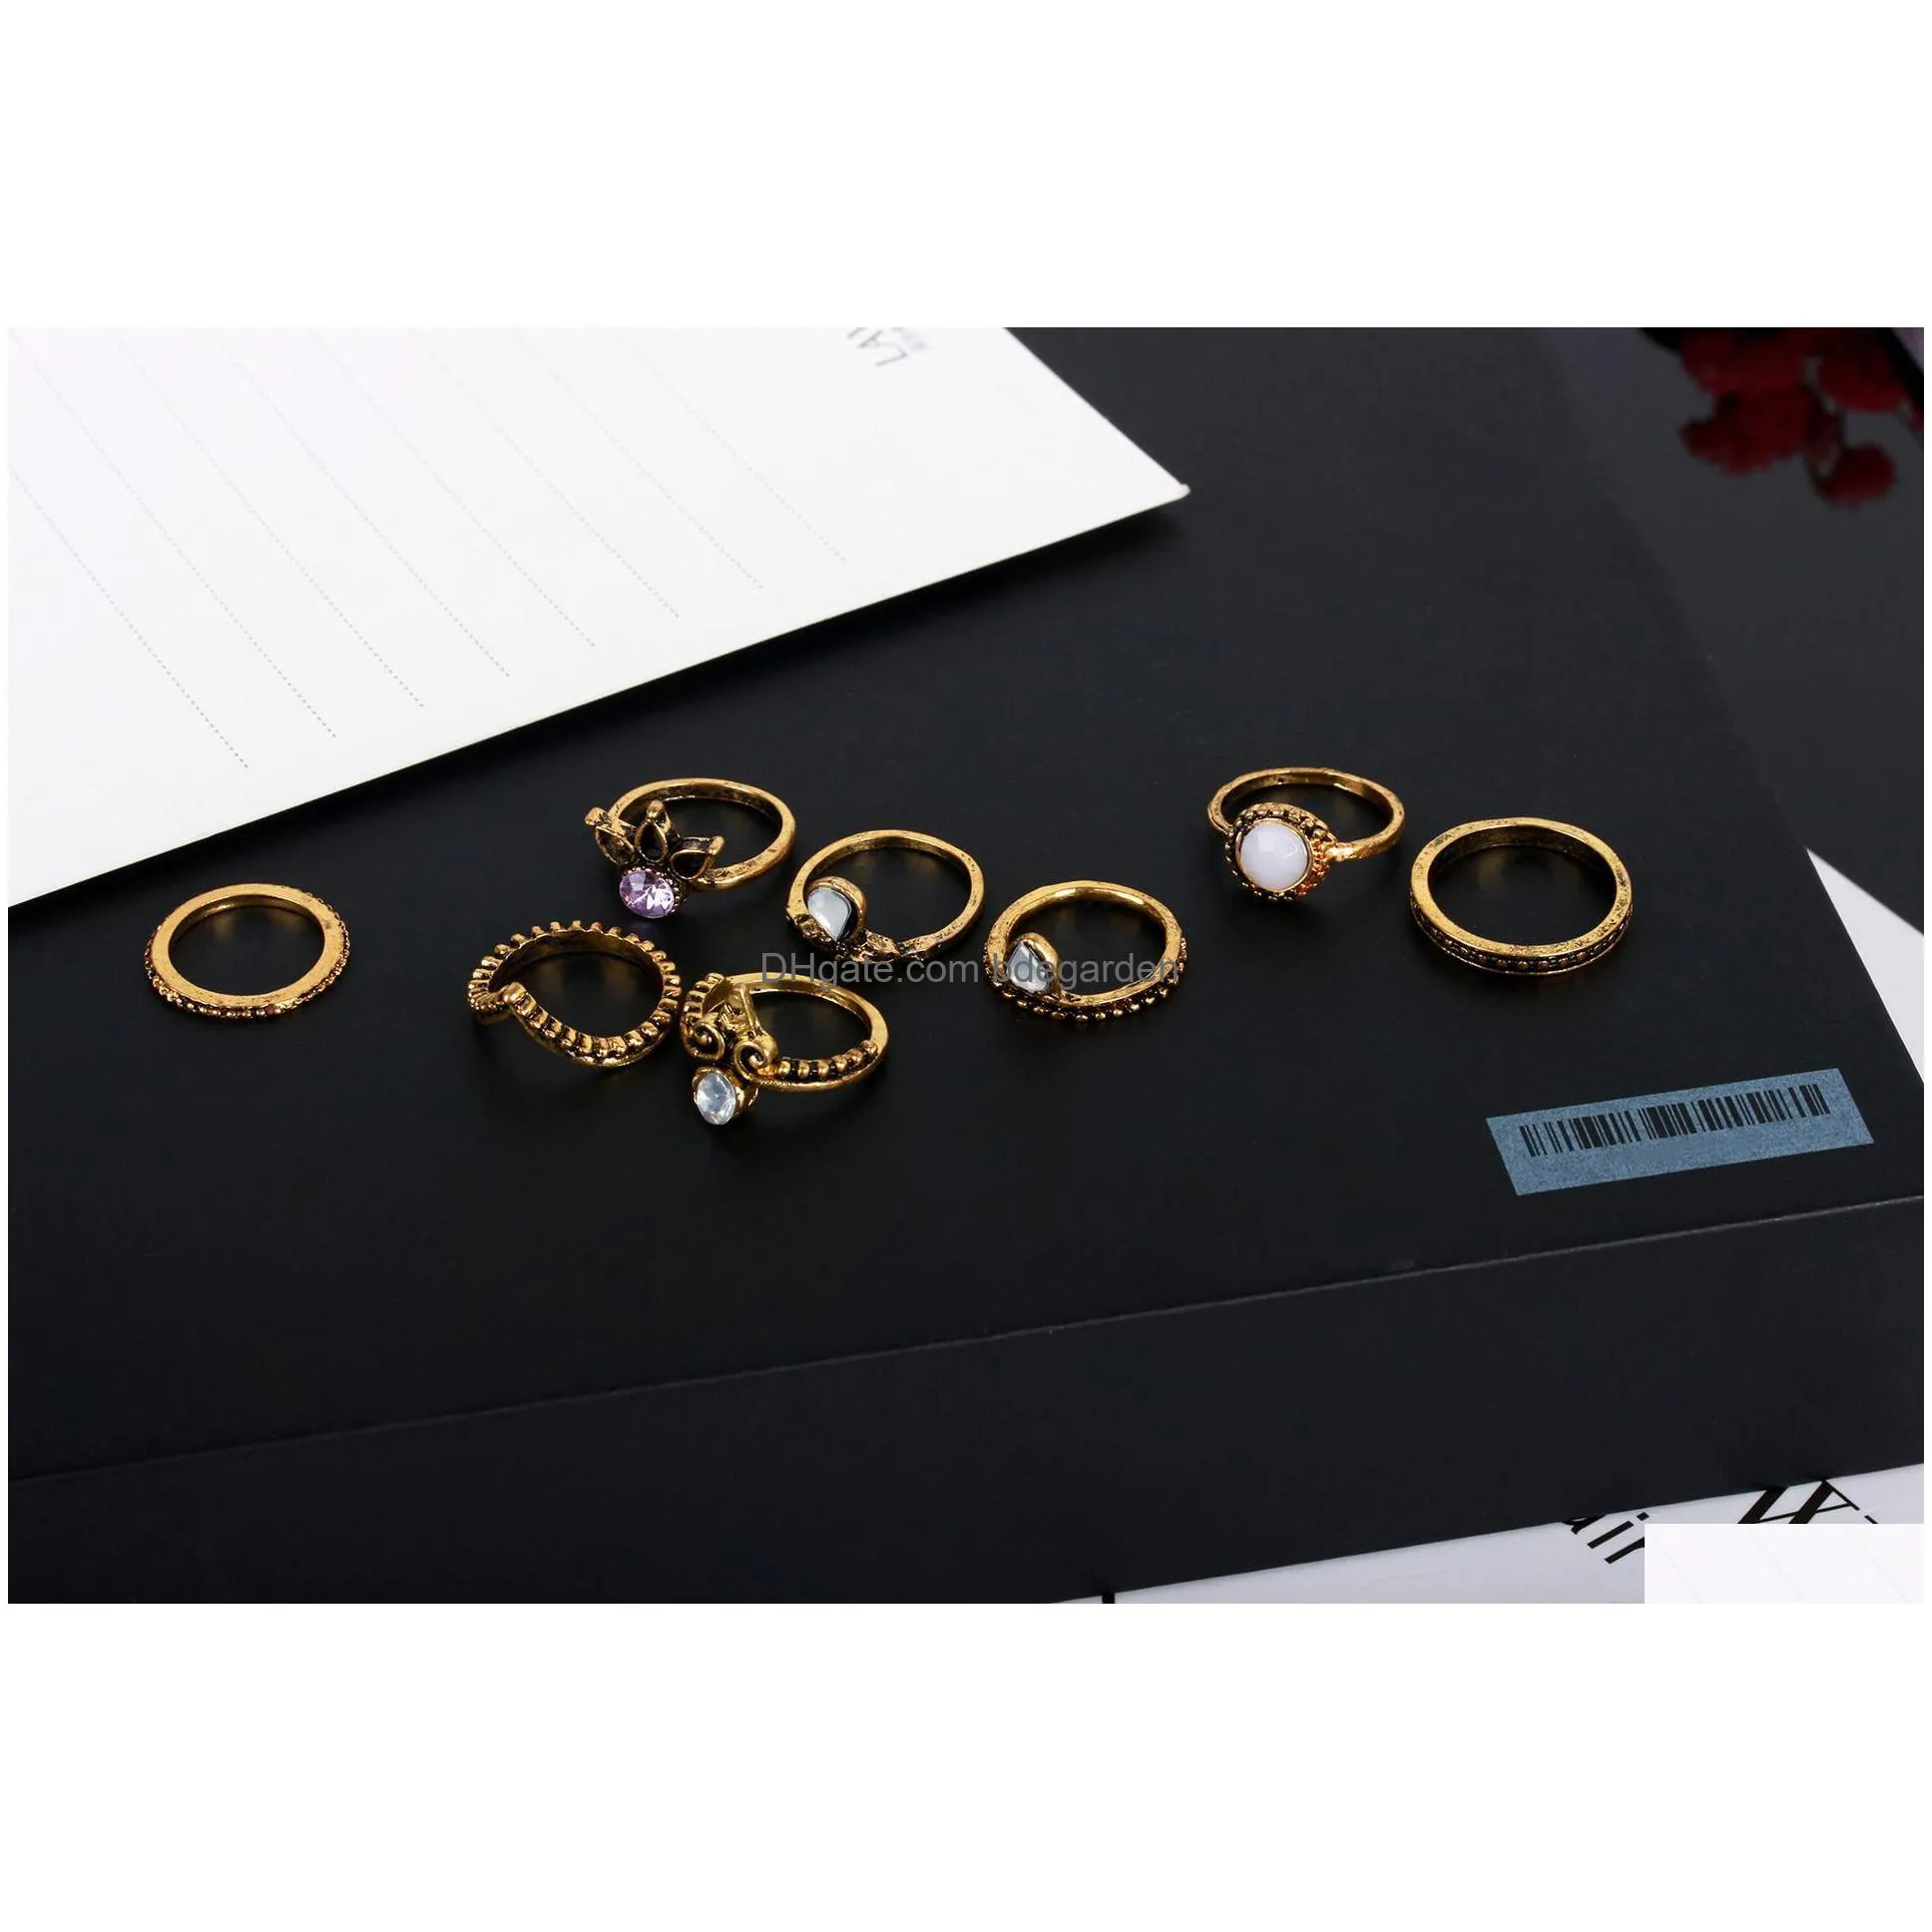 8pcs/set vintage midi rings crown white gem bronze brass knuckle ring ethnic carved boho midi finger rings for men&women fashion